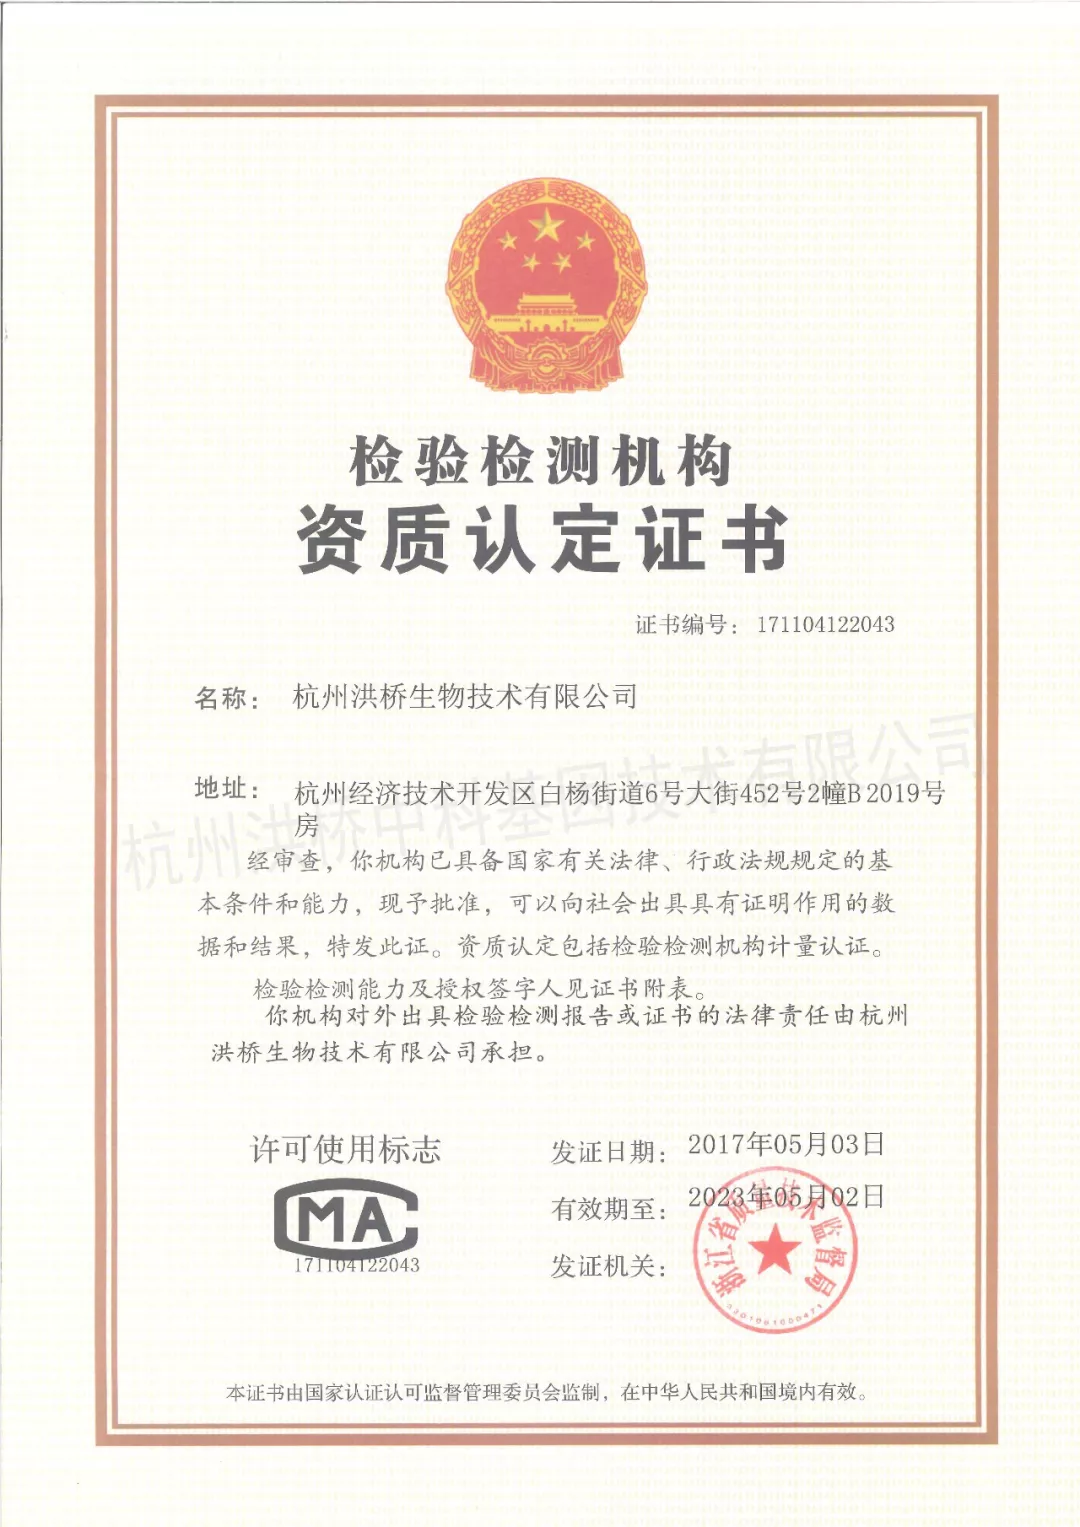 热烈祝贺杭州中科基因获评杭州市高新技术企业和区级企业研发中心